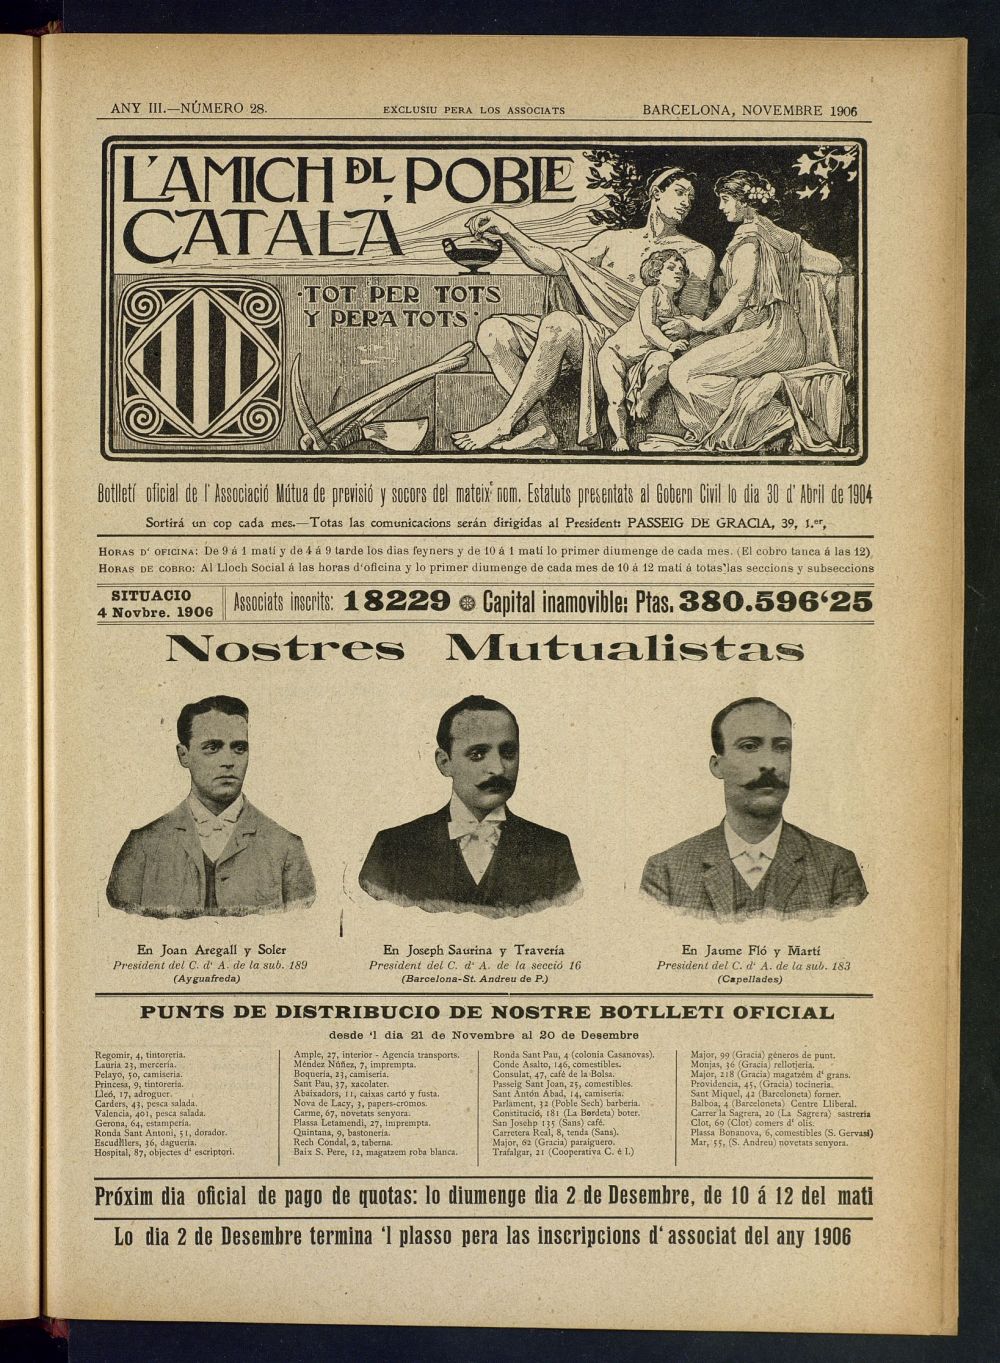 Lamich del poble catal: butllet oficial de lassociacio, ques publicara una volta cada mes de novembre de 1906